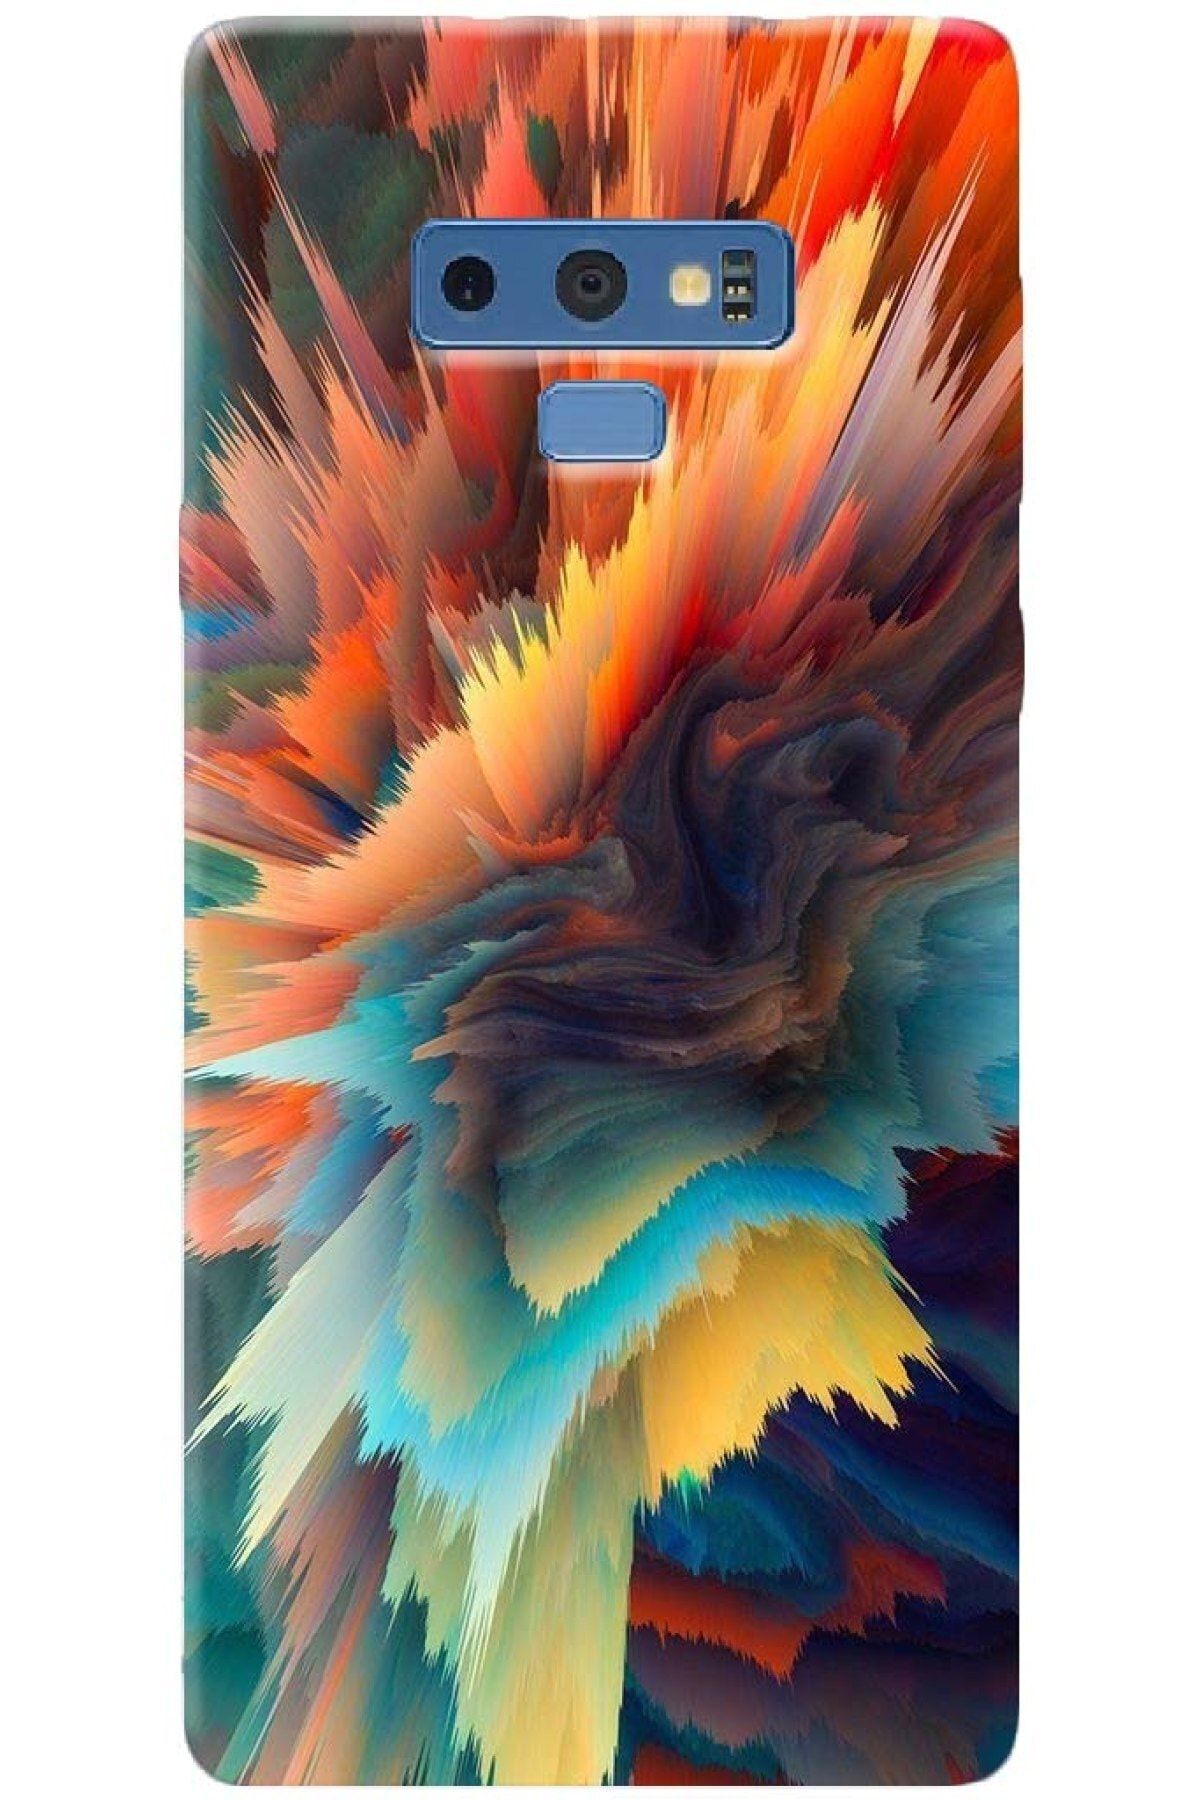 Noprin Samsung Galaxy Note 9 Kılıf Silikon Baskılı Desenli Arka Kapak